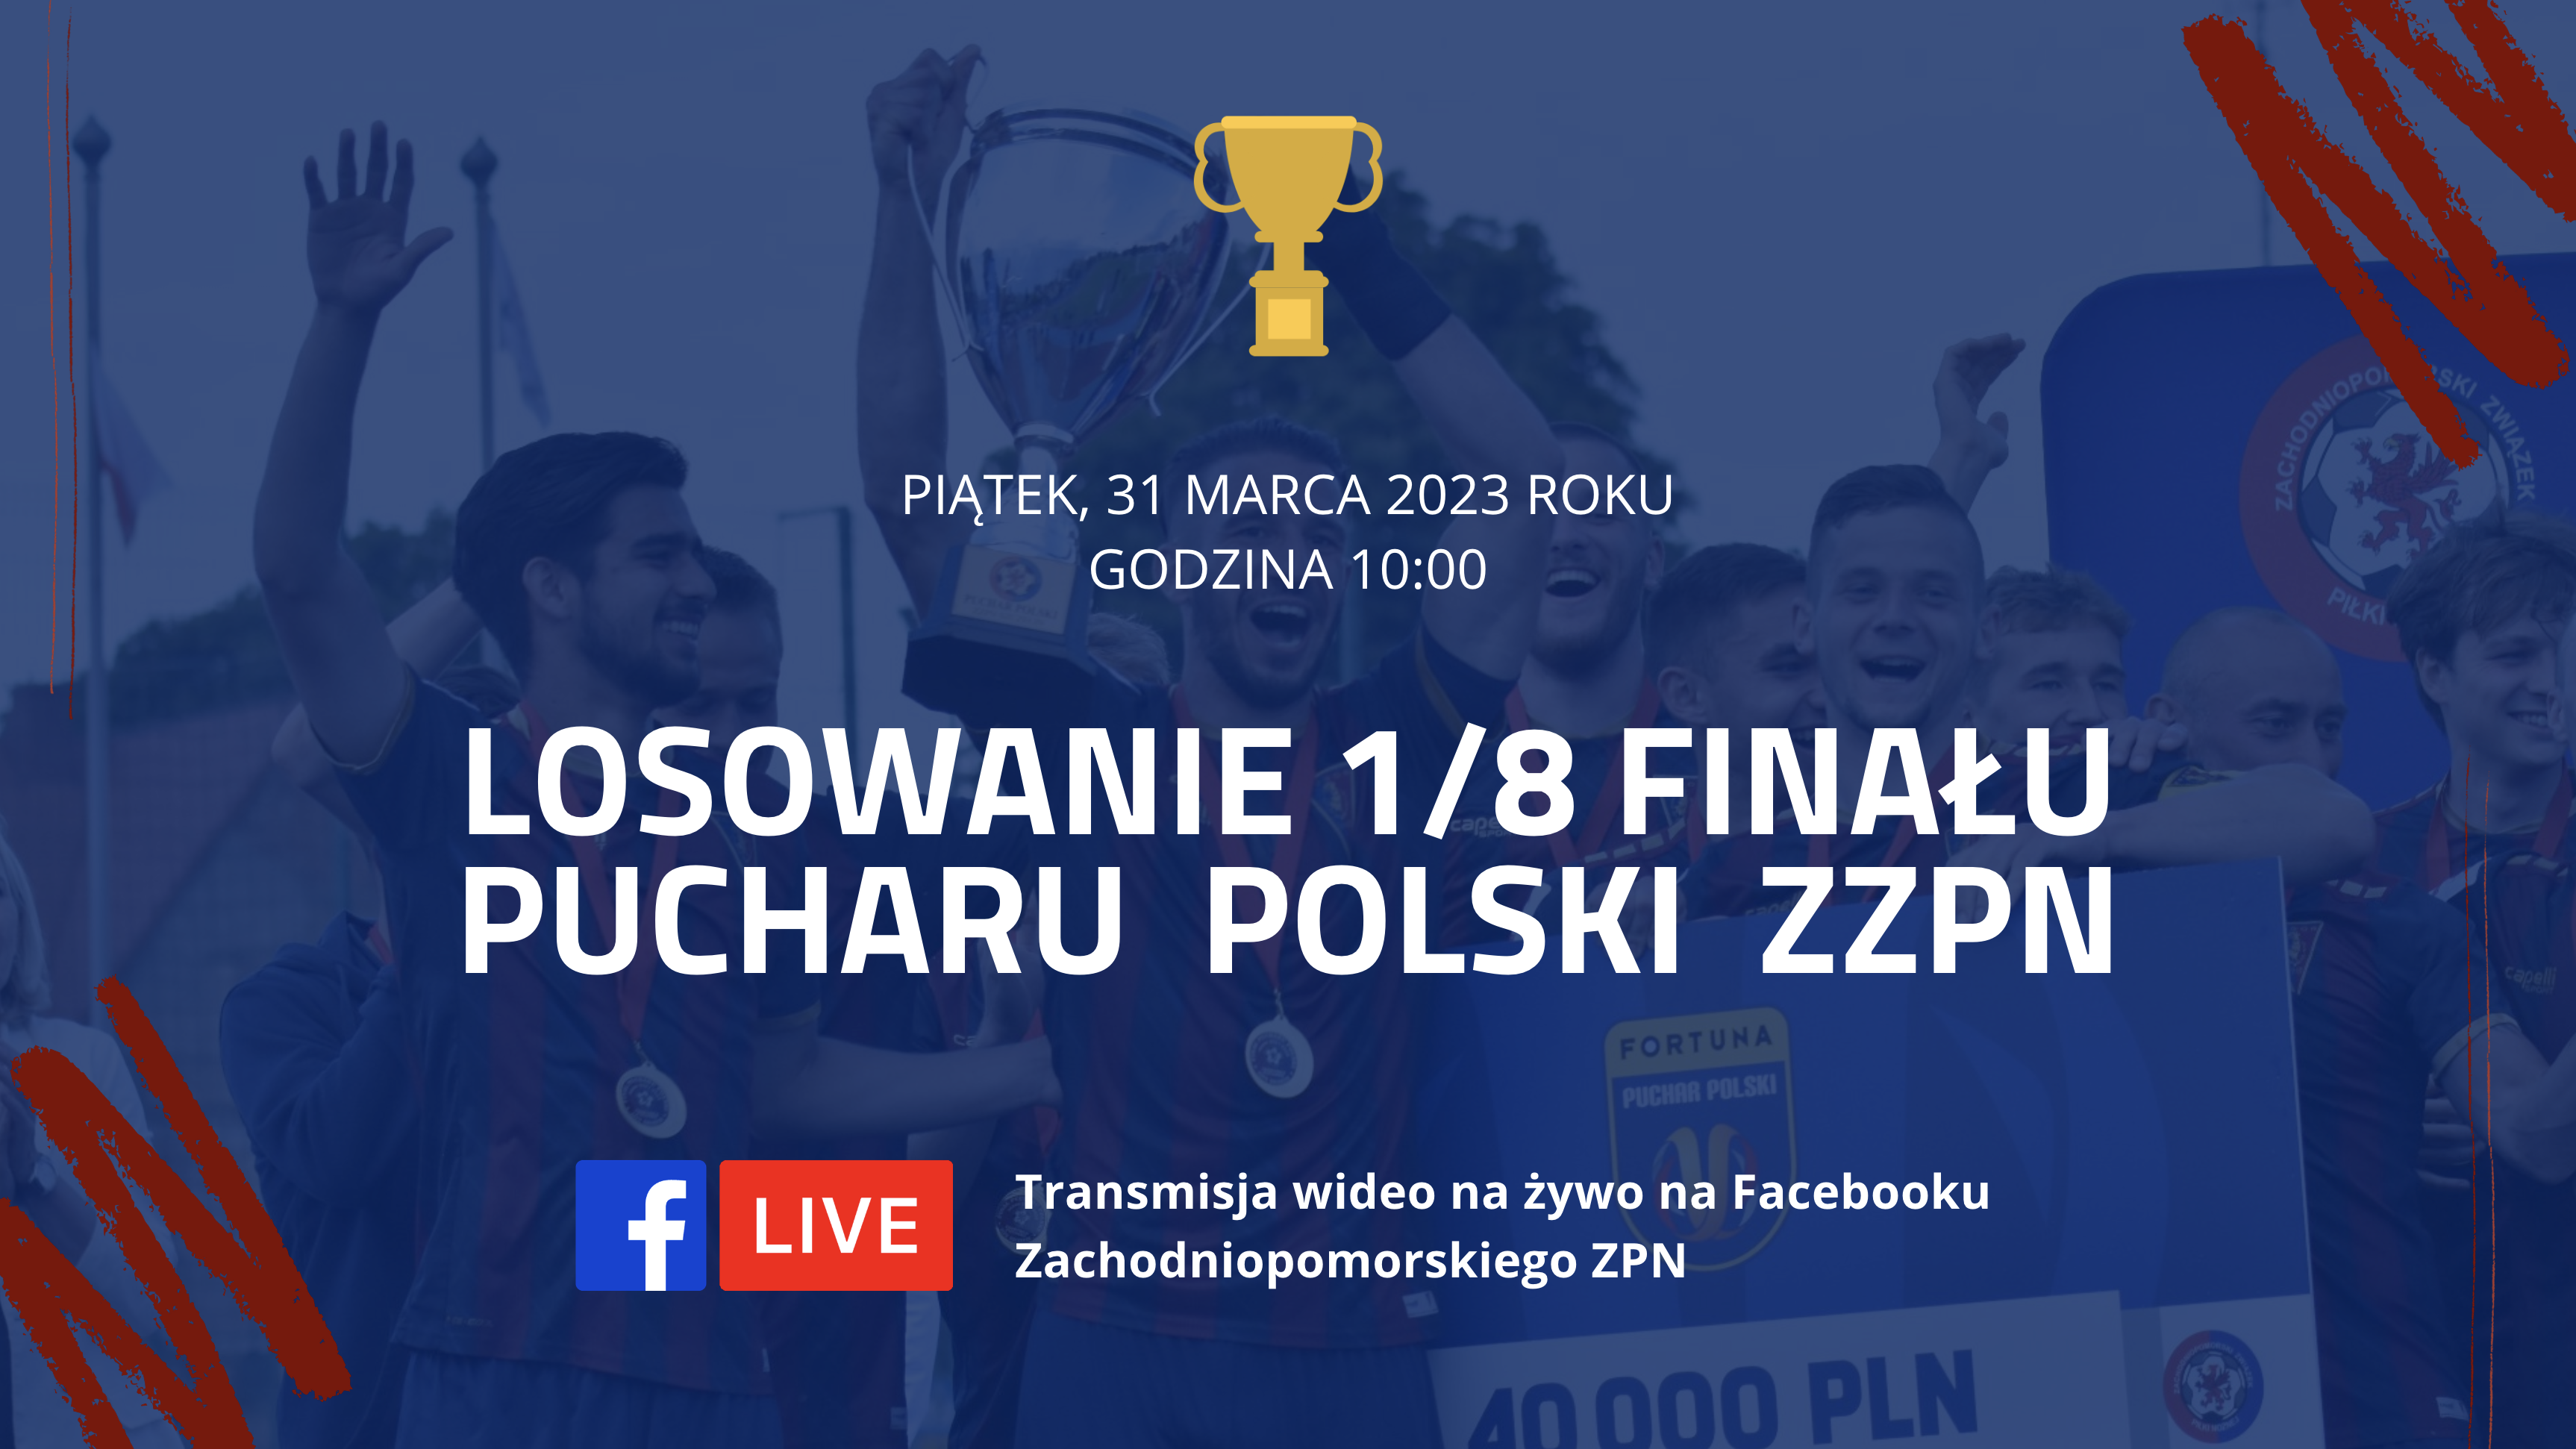 Puchar Polski ZZPN 2022/2023 - Losowanie 1/8 finału